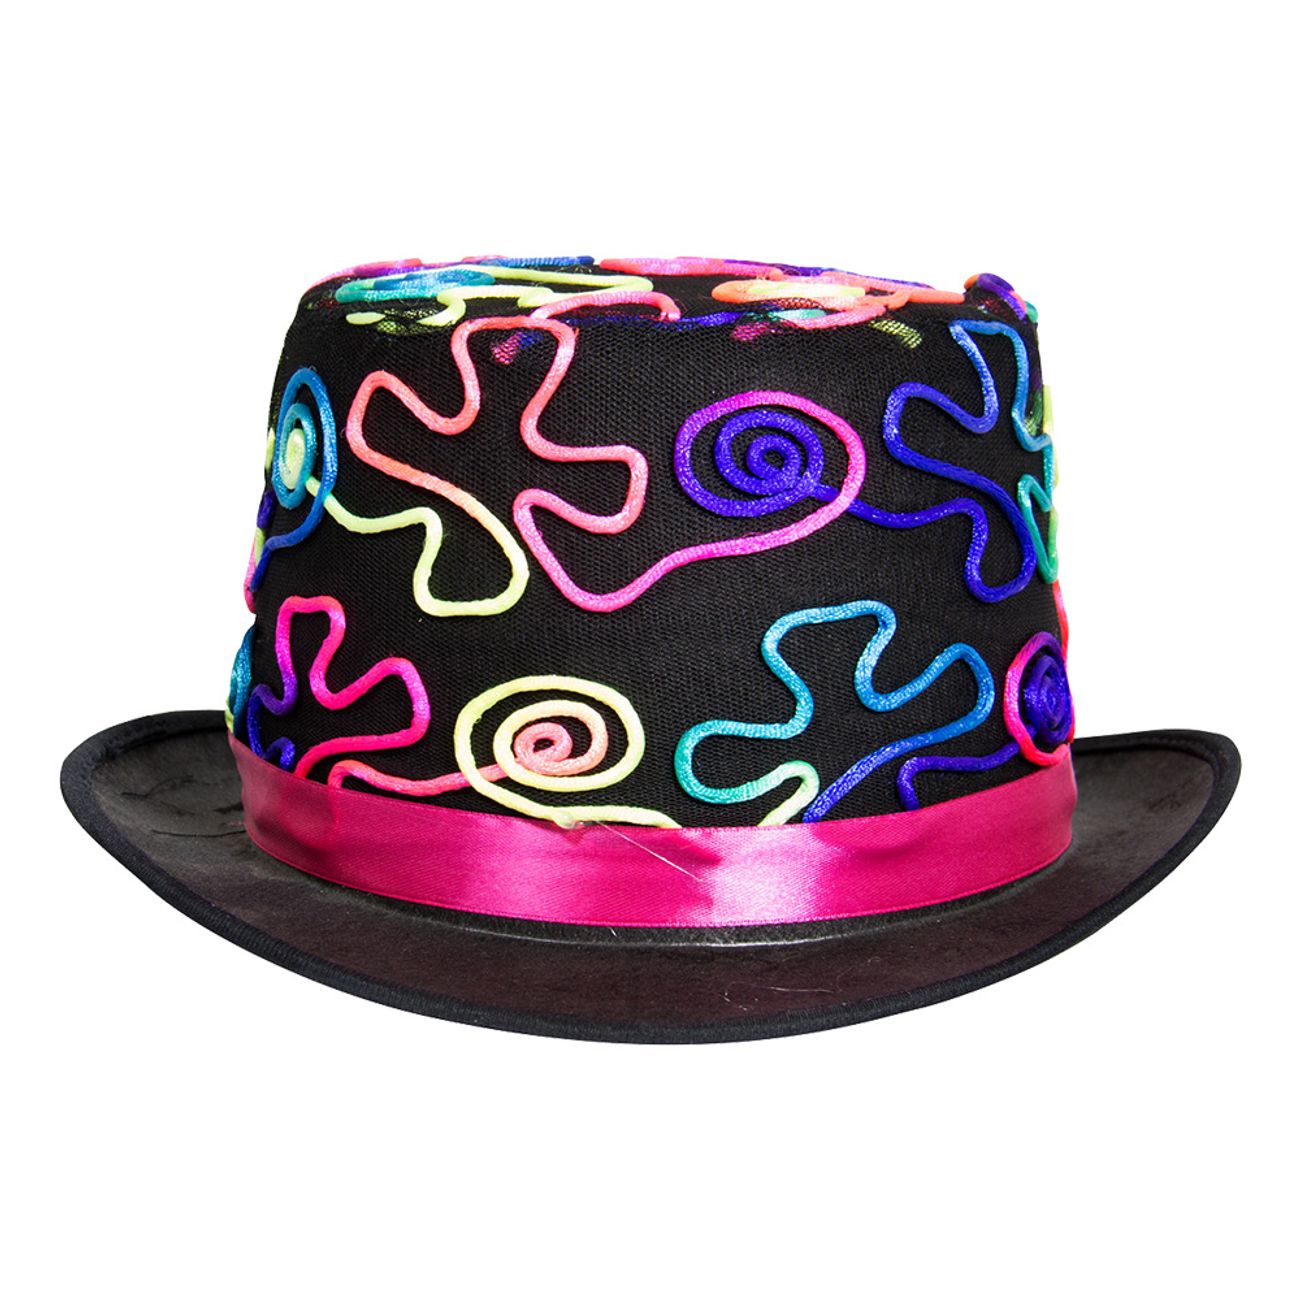 svart-hatt-med-neonfarger-1